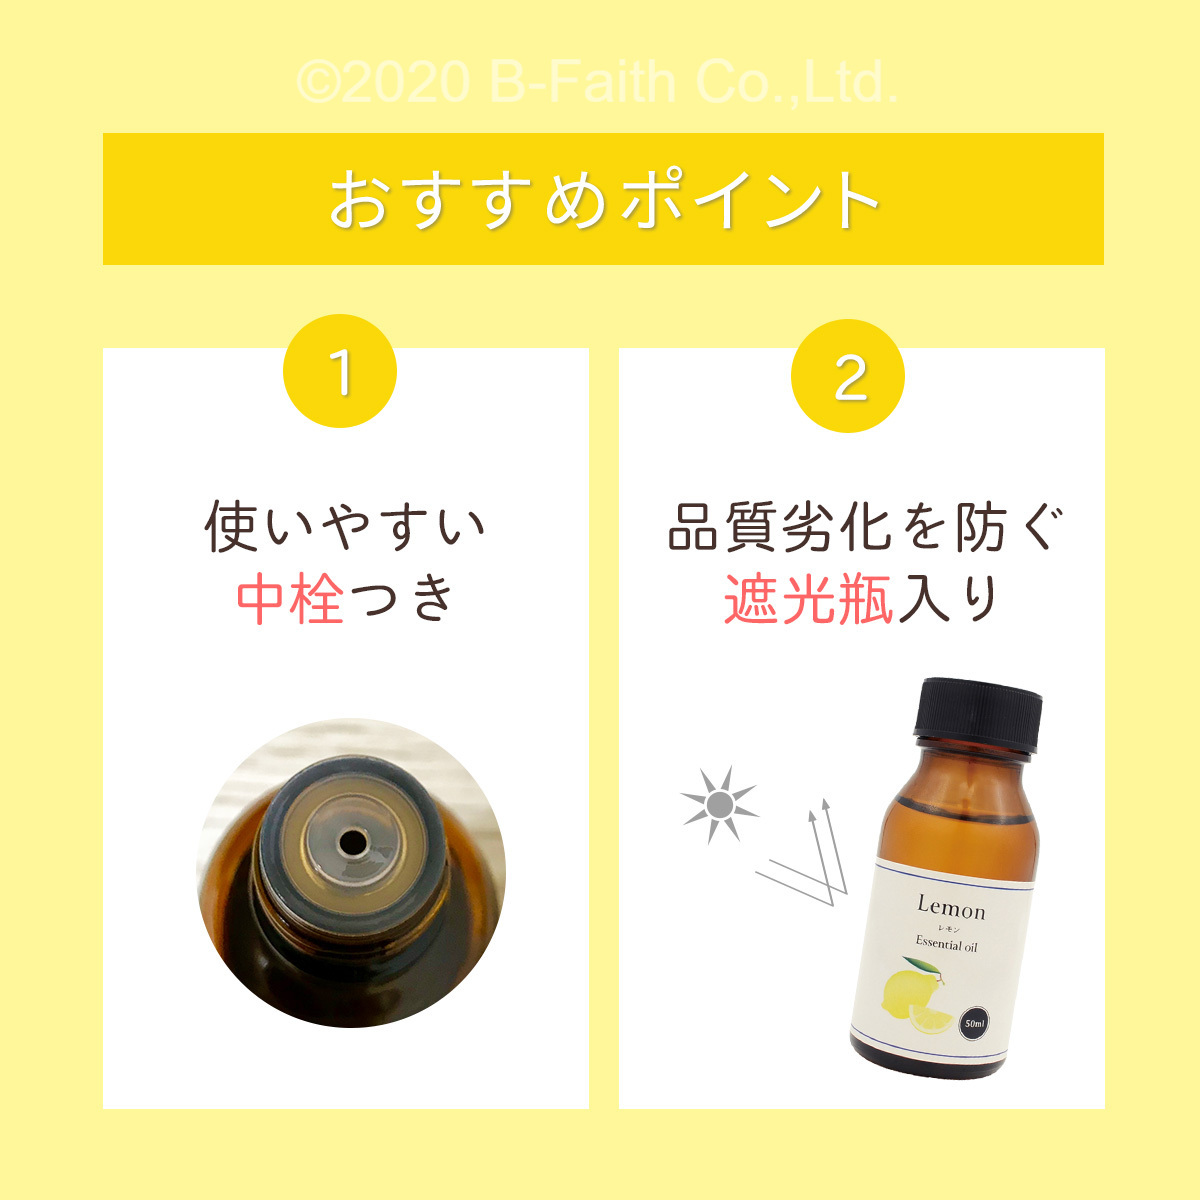 日本の職人技 レモンオイル 50ml 精油 天然100% アロマオイル オイル アロマ レモン アロマテラピー エッセンシャルオイル アロマセラピー  エッセンシャルオイル